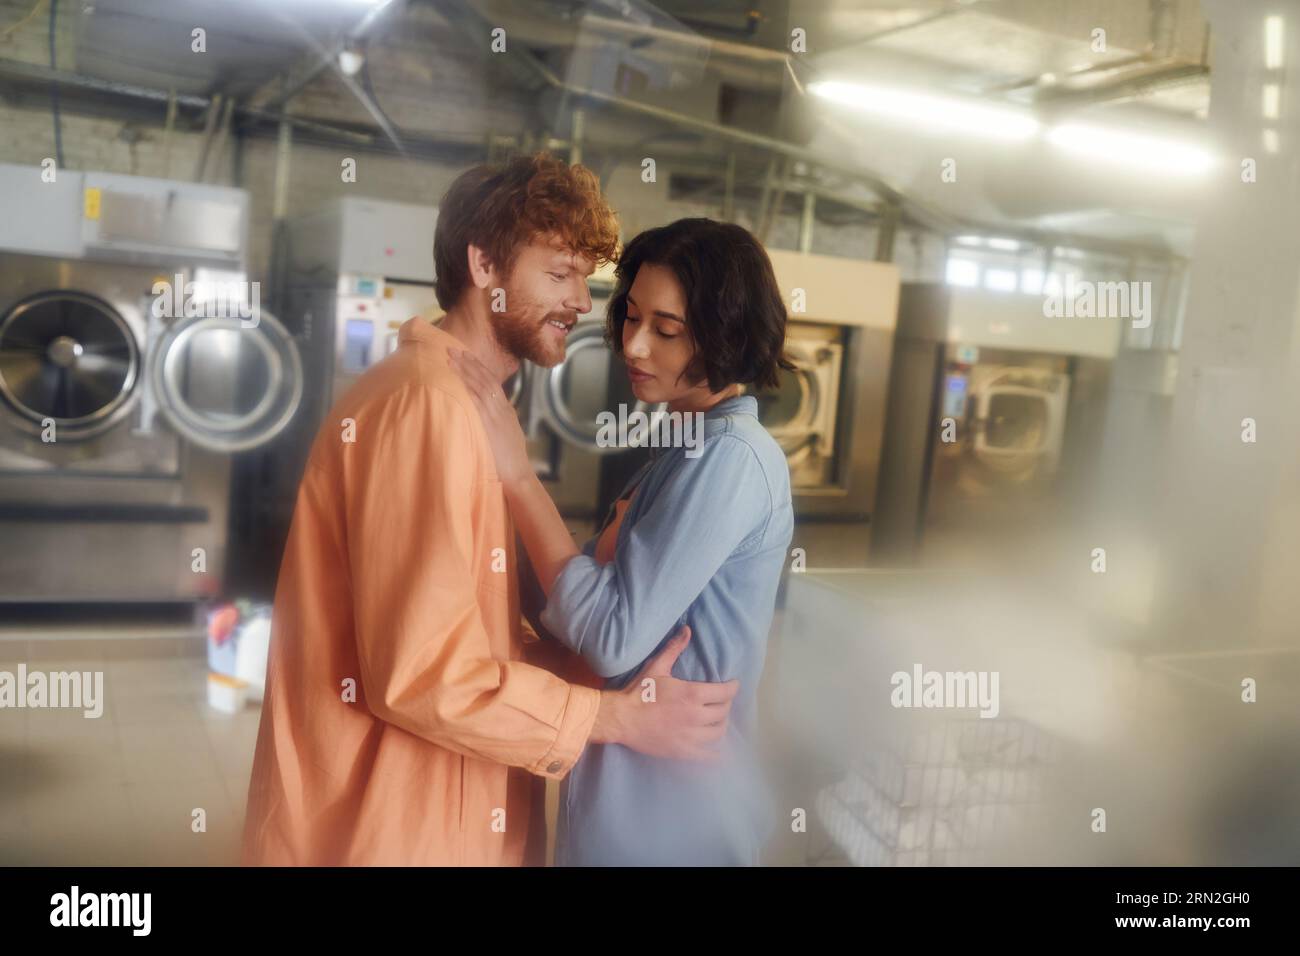 homme roux joyeux serrant une jeune petite amie asiatique dans une blanchisserie publique floue Banque D'Images